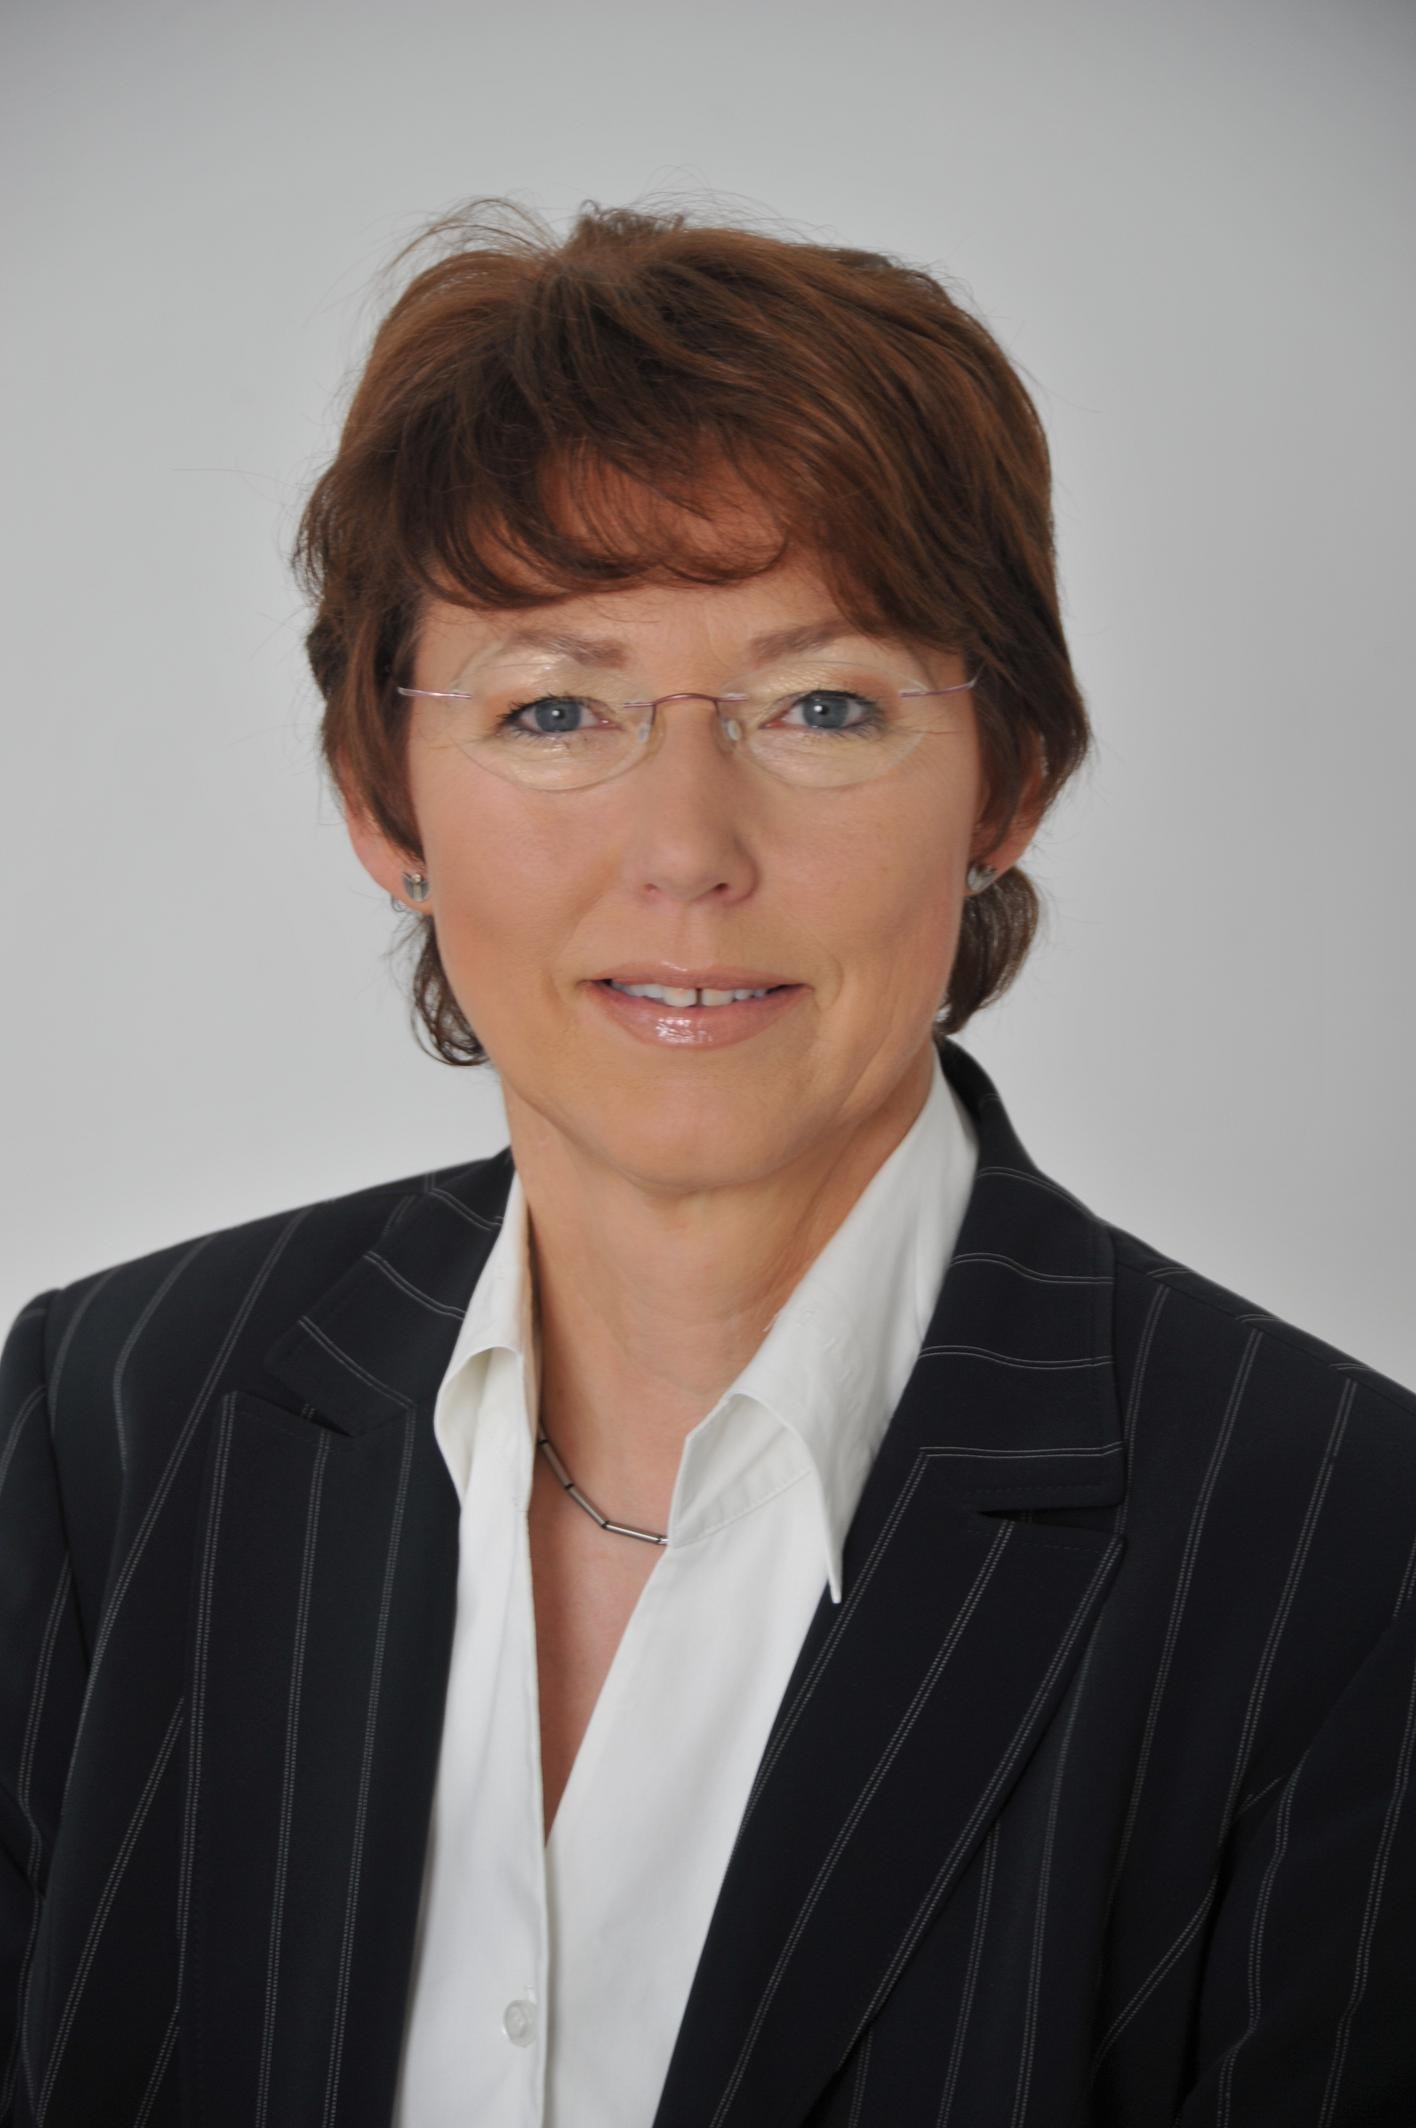 Karin Schmitt-Promny